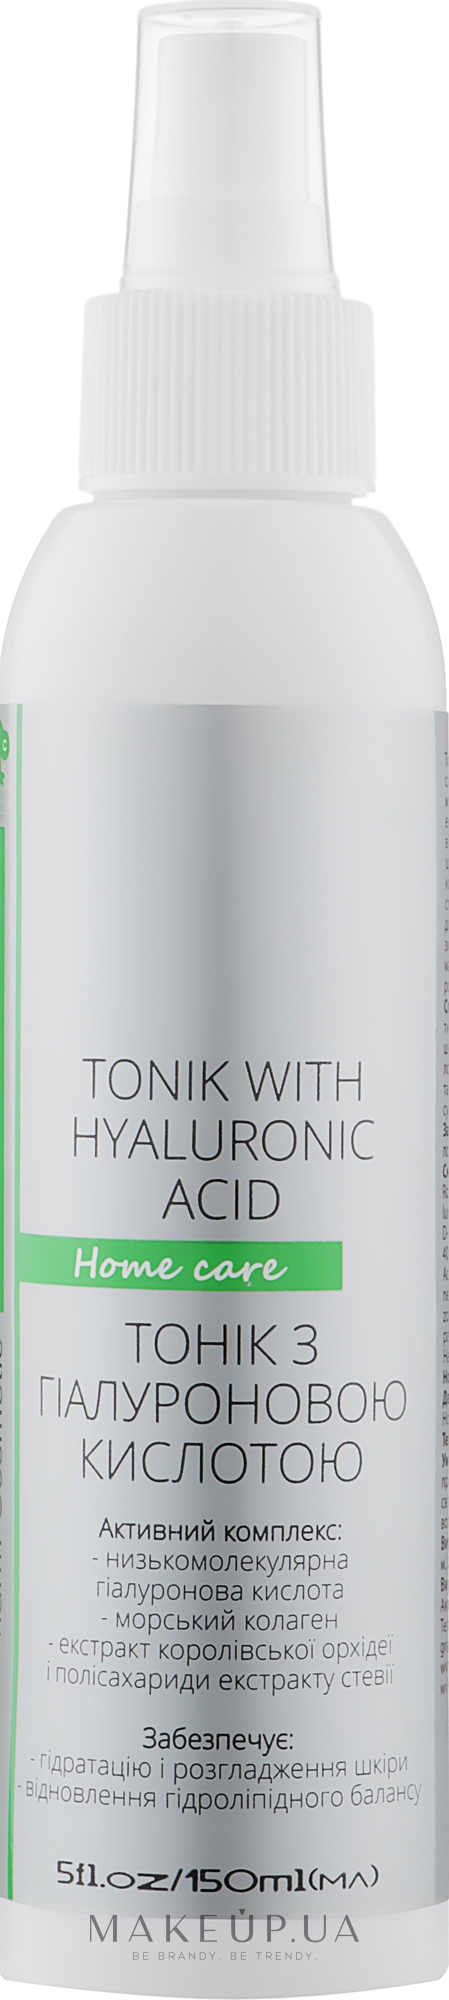 Тонік для обличчя з гіалуроновою кислотою - Green Pharm Cosmetic Tonic With Hyaluronic Acid PH 5,5 — фото 150ml